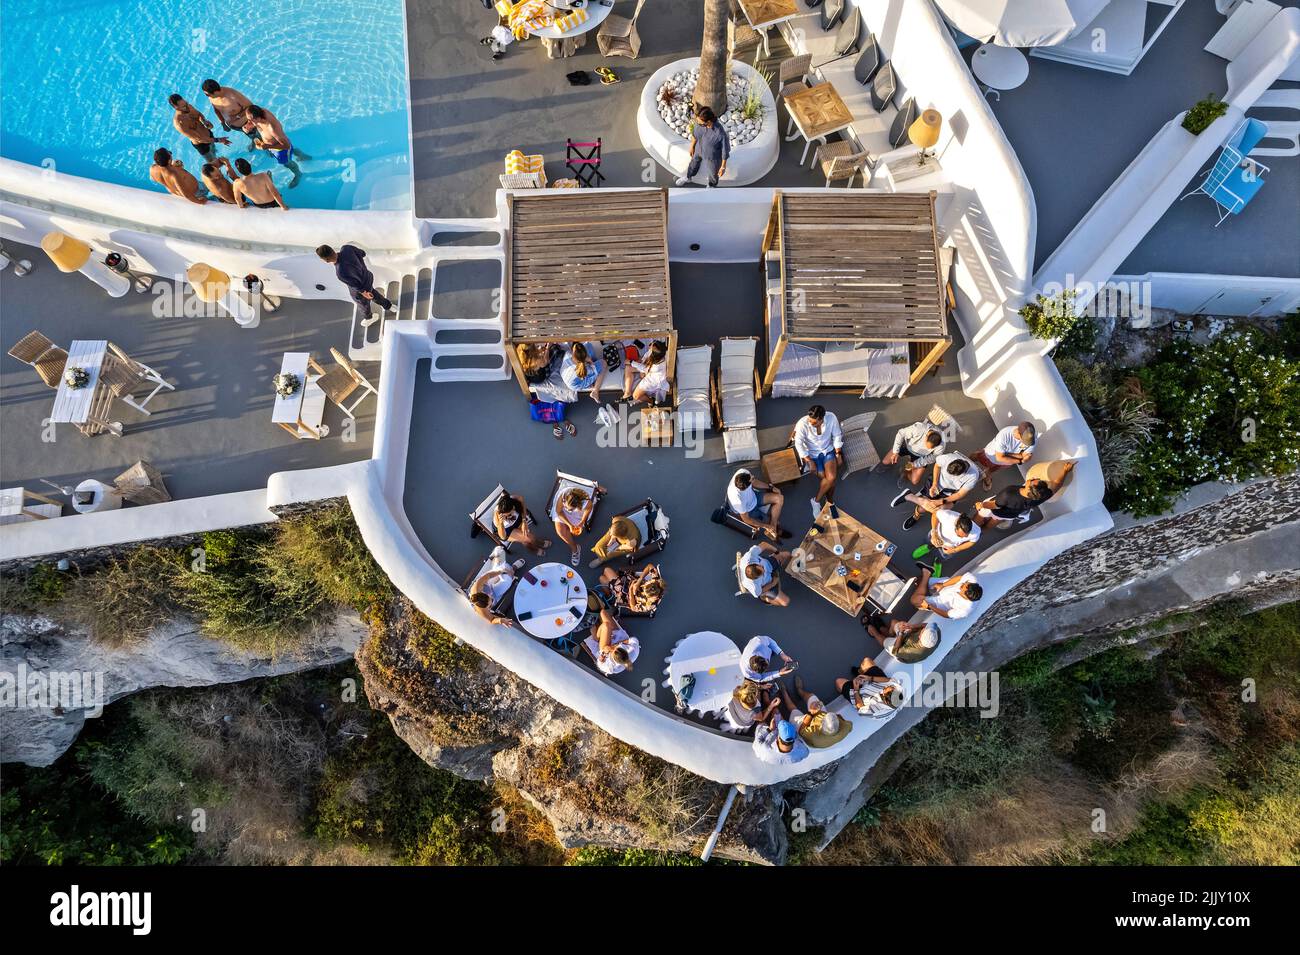 'Katikies Kirini' hotel, 'hangine sopra la caldera, Perivolas, Oia villaggio, Santorini isola, Cicladi, Grecia. Foto Stock